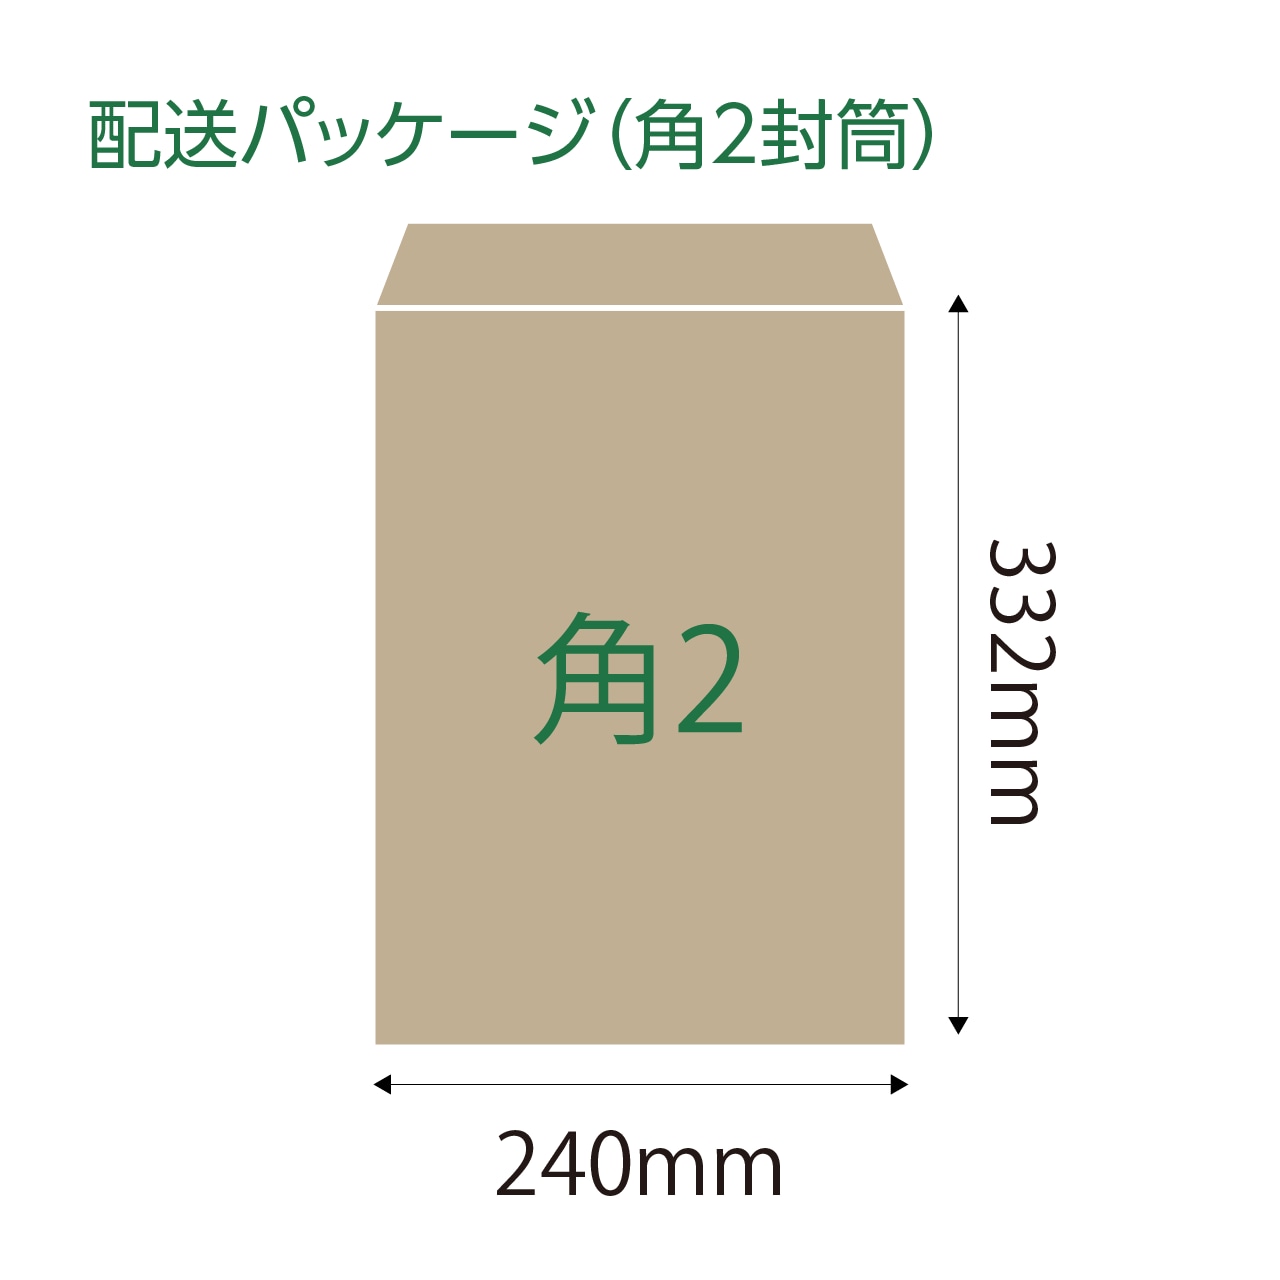 OSAWA CRAFT GREEN TEA（12包入り×2袋）送料込み！